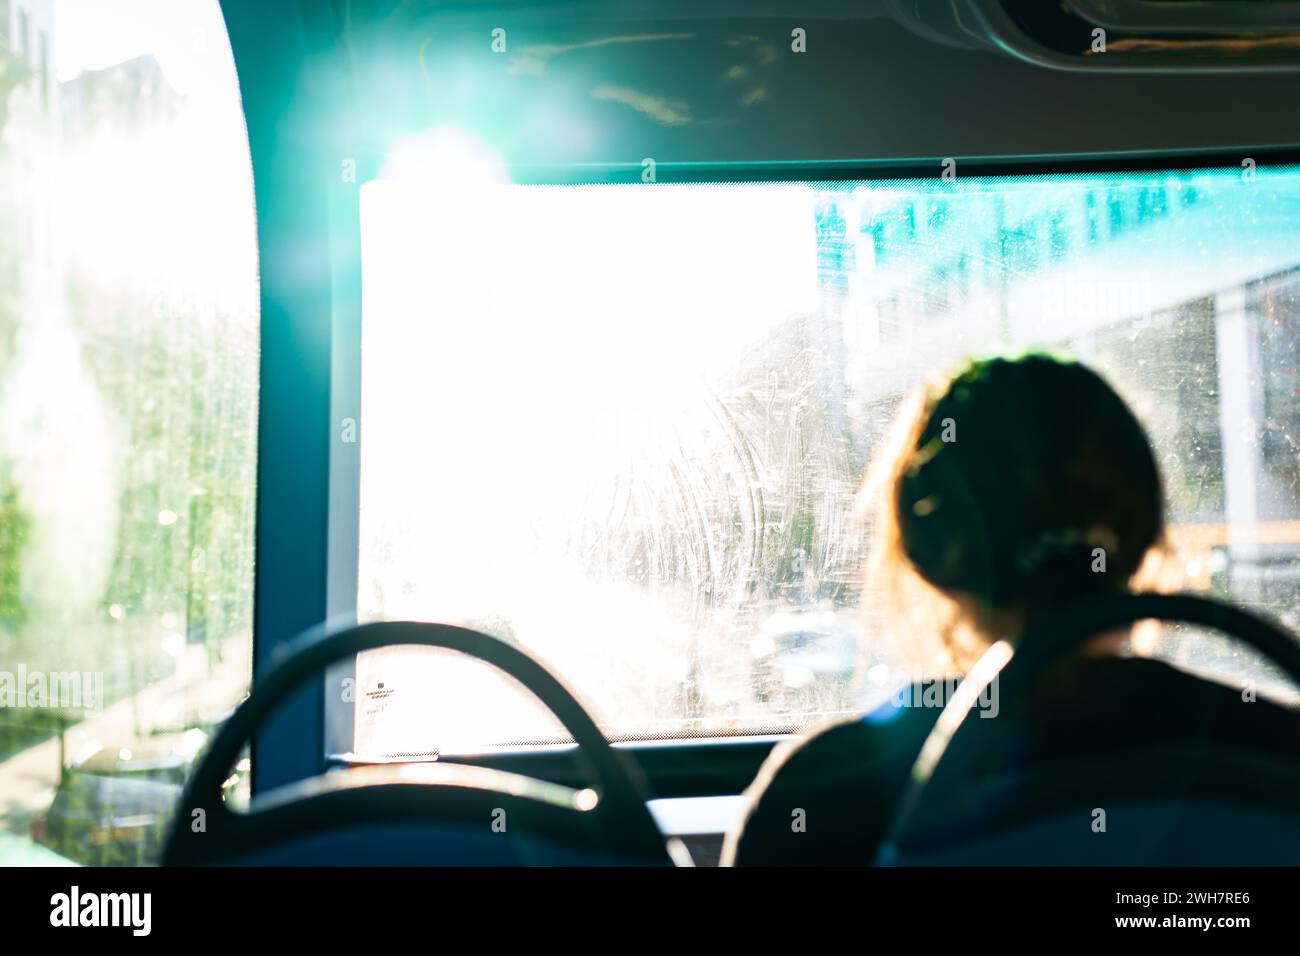 Regardant directement dans l'éblouissement blanc du Soleil avec un passager regardant dans la lumière.Une image conceptuelle liée au réchauffement climatique. Banque D'Images